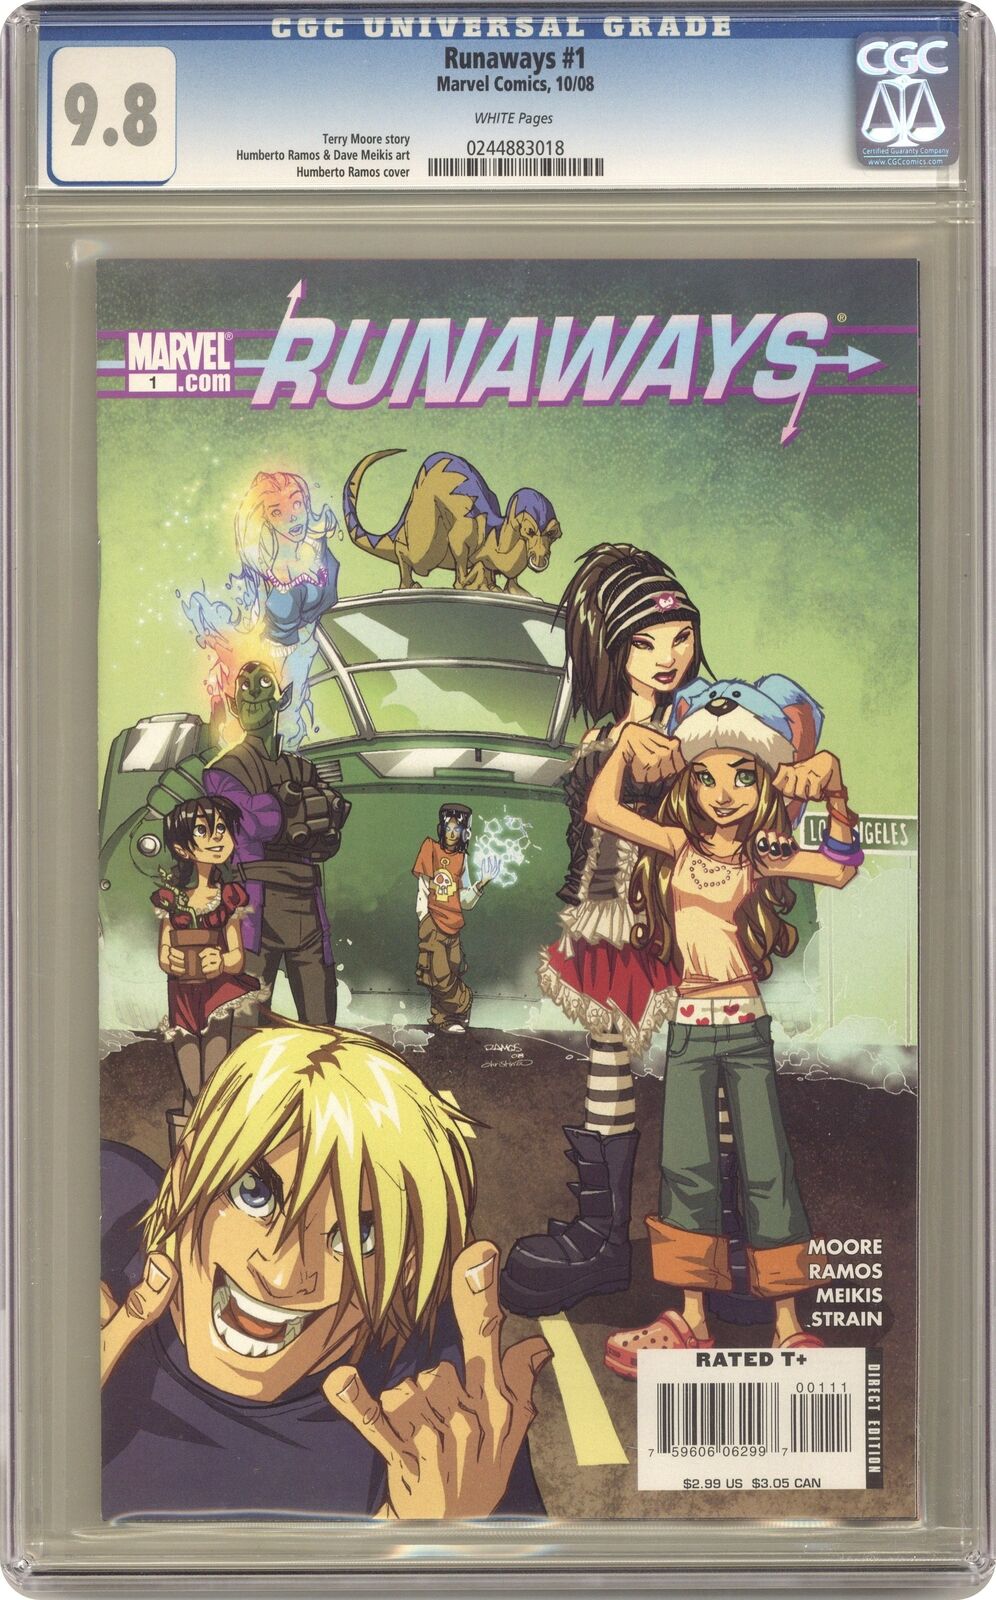 Runaways #1 CGC 9.8 2008 0244883018